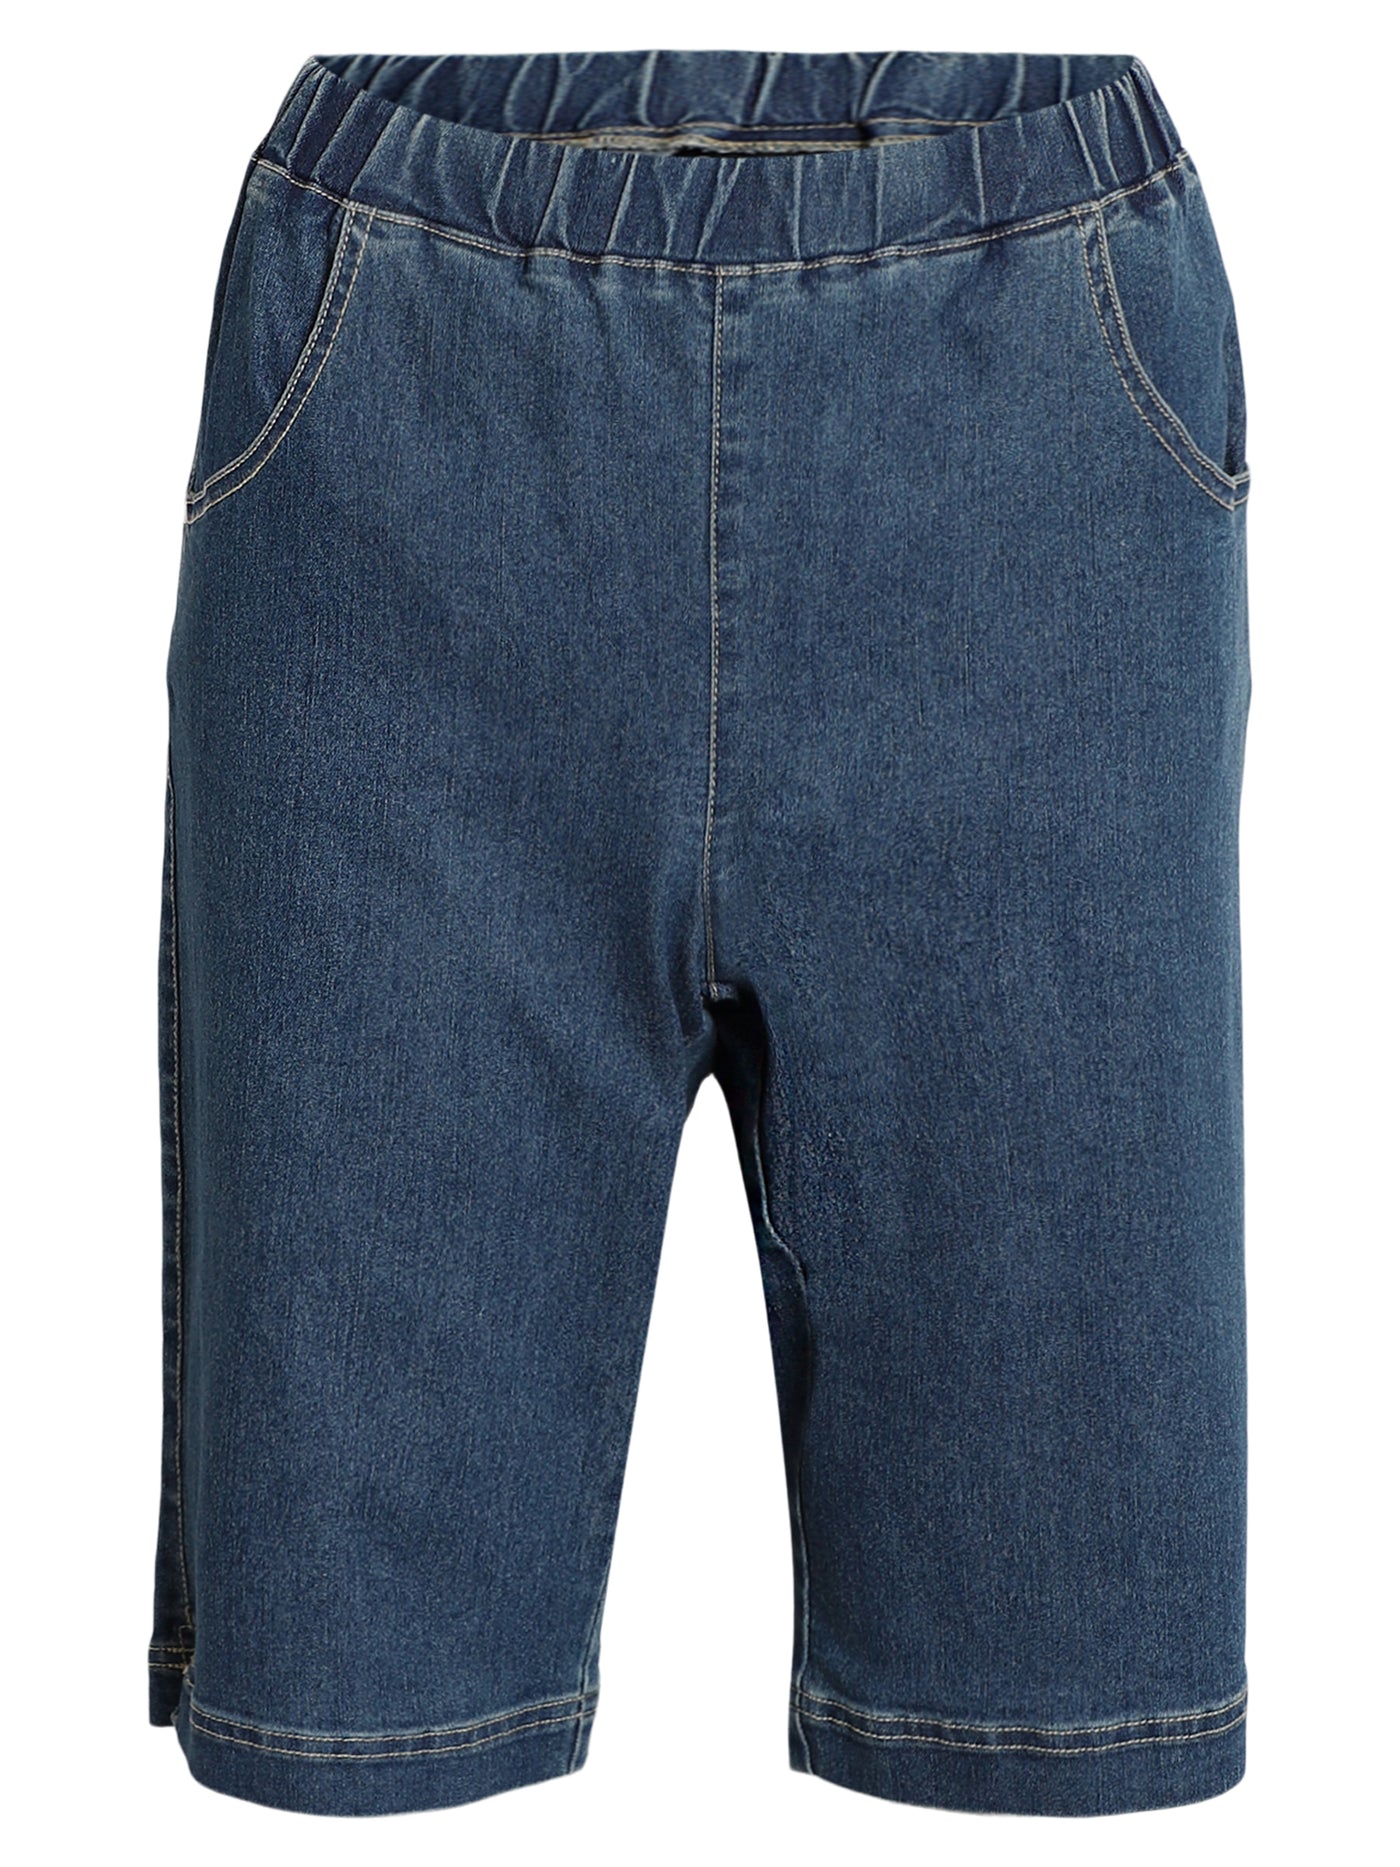 Shorts - Dark blue denim